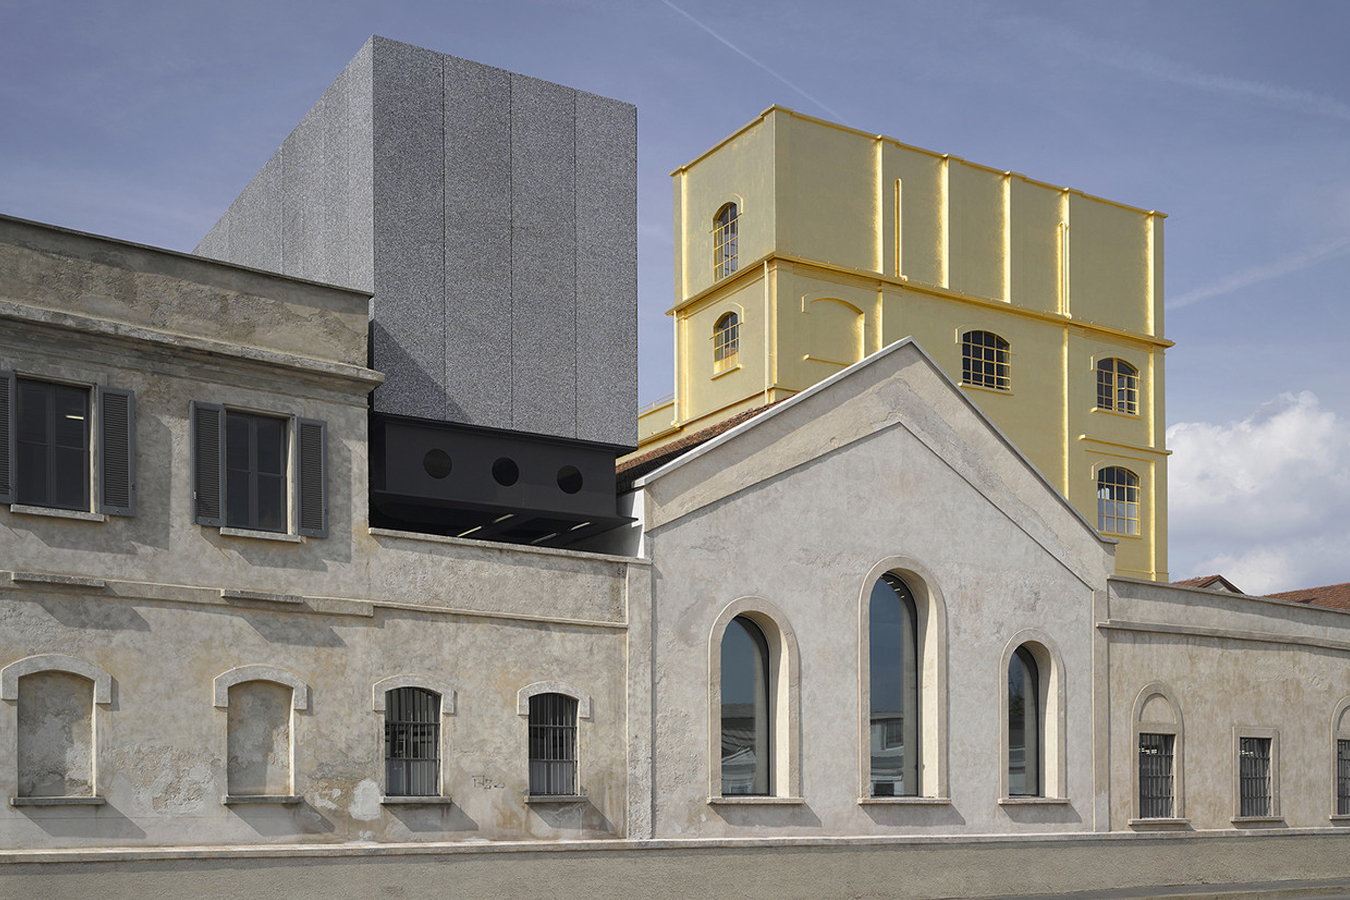 El edificio de la Fondazione Prada, conocido como la "casa embrujada", está cubierto de pan de oro.